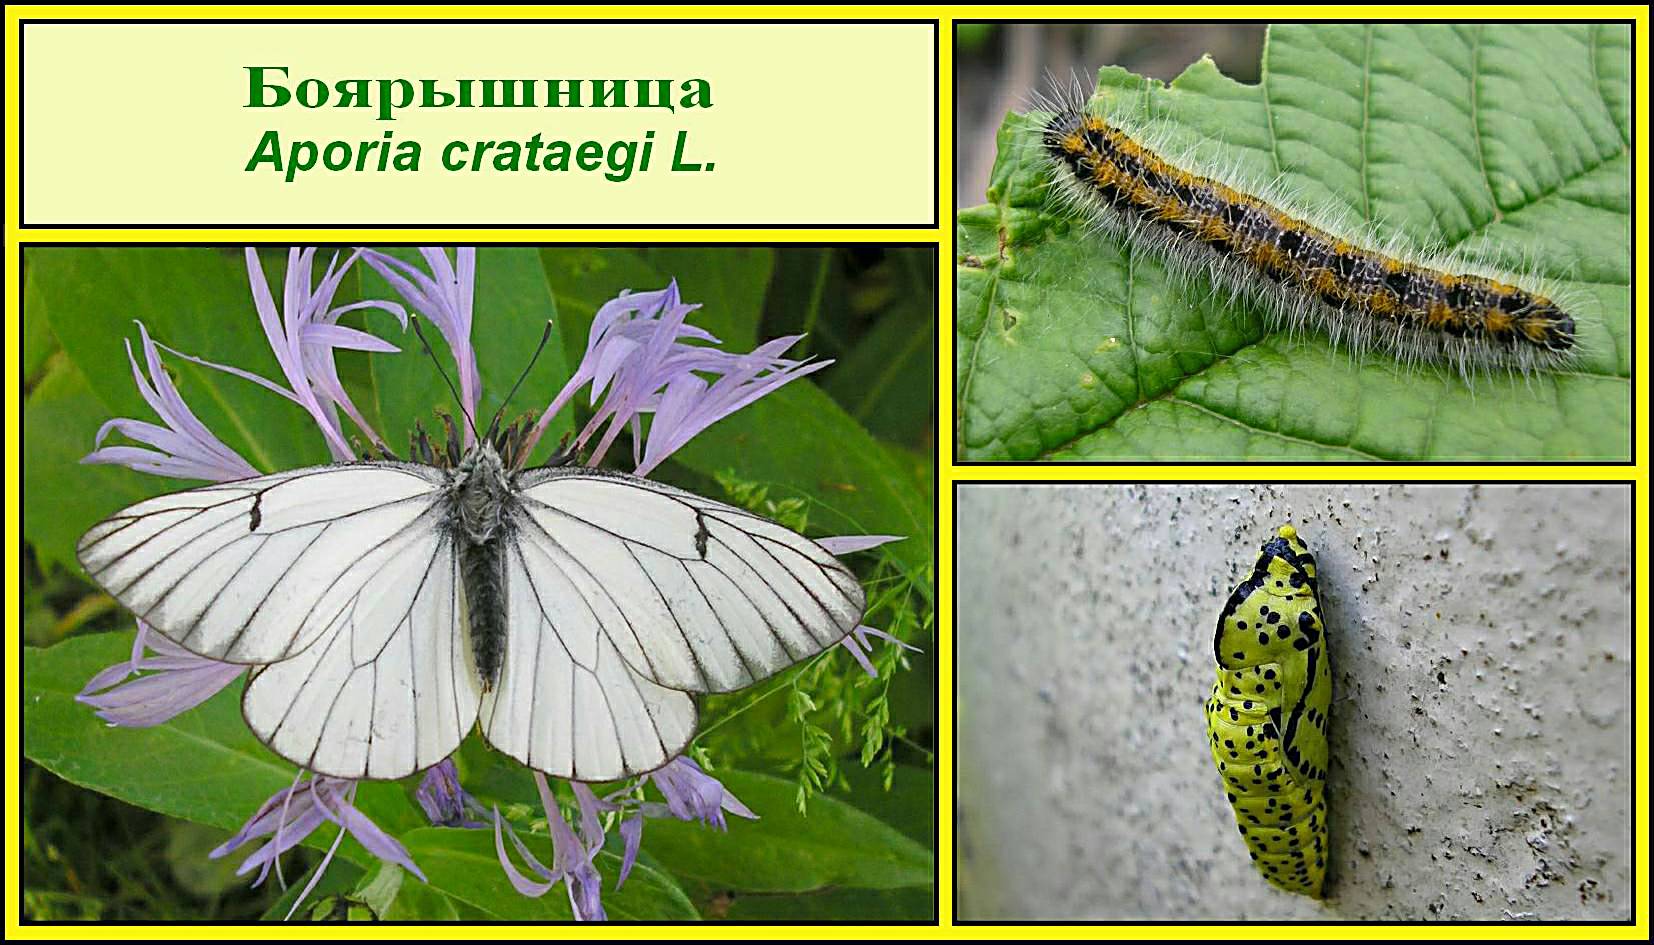 Красивая, но очень опасная бабочка-боярышница: описание и фото